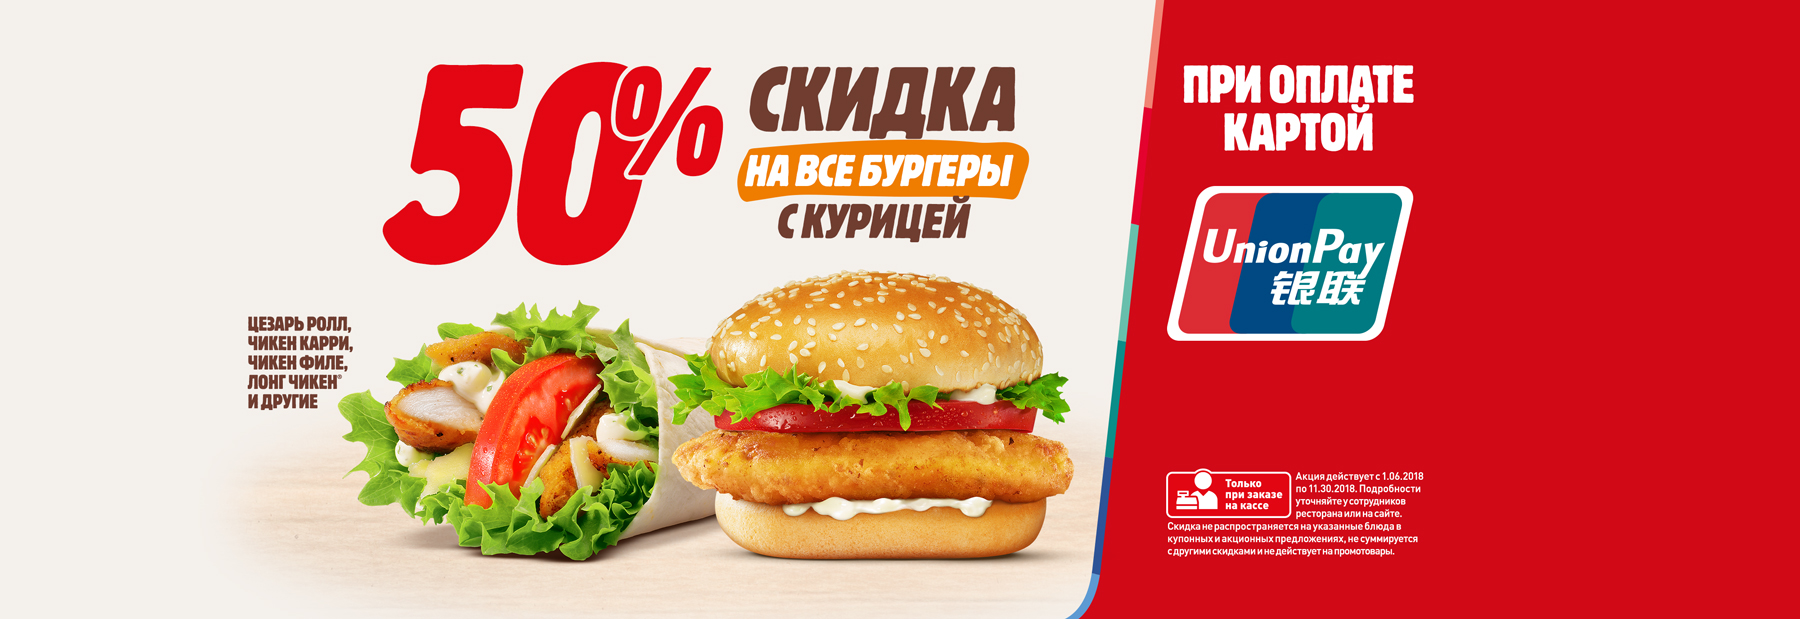 Рекламная акция BURGER KING «50% скидка на куриные бургеры при оплате картой UnionPay»